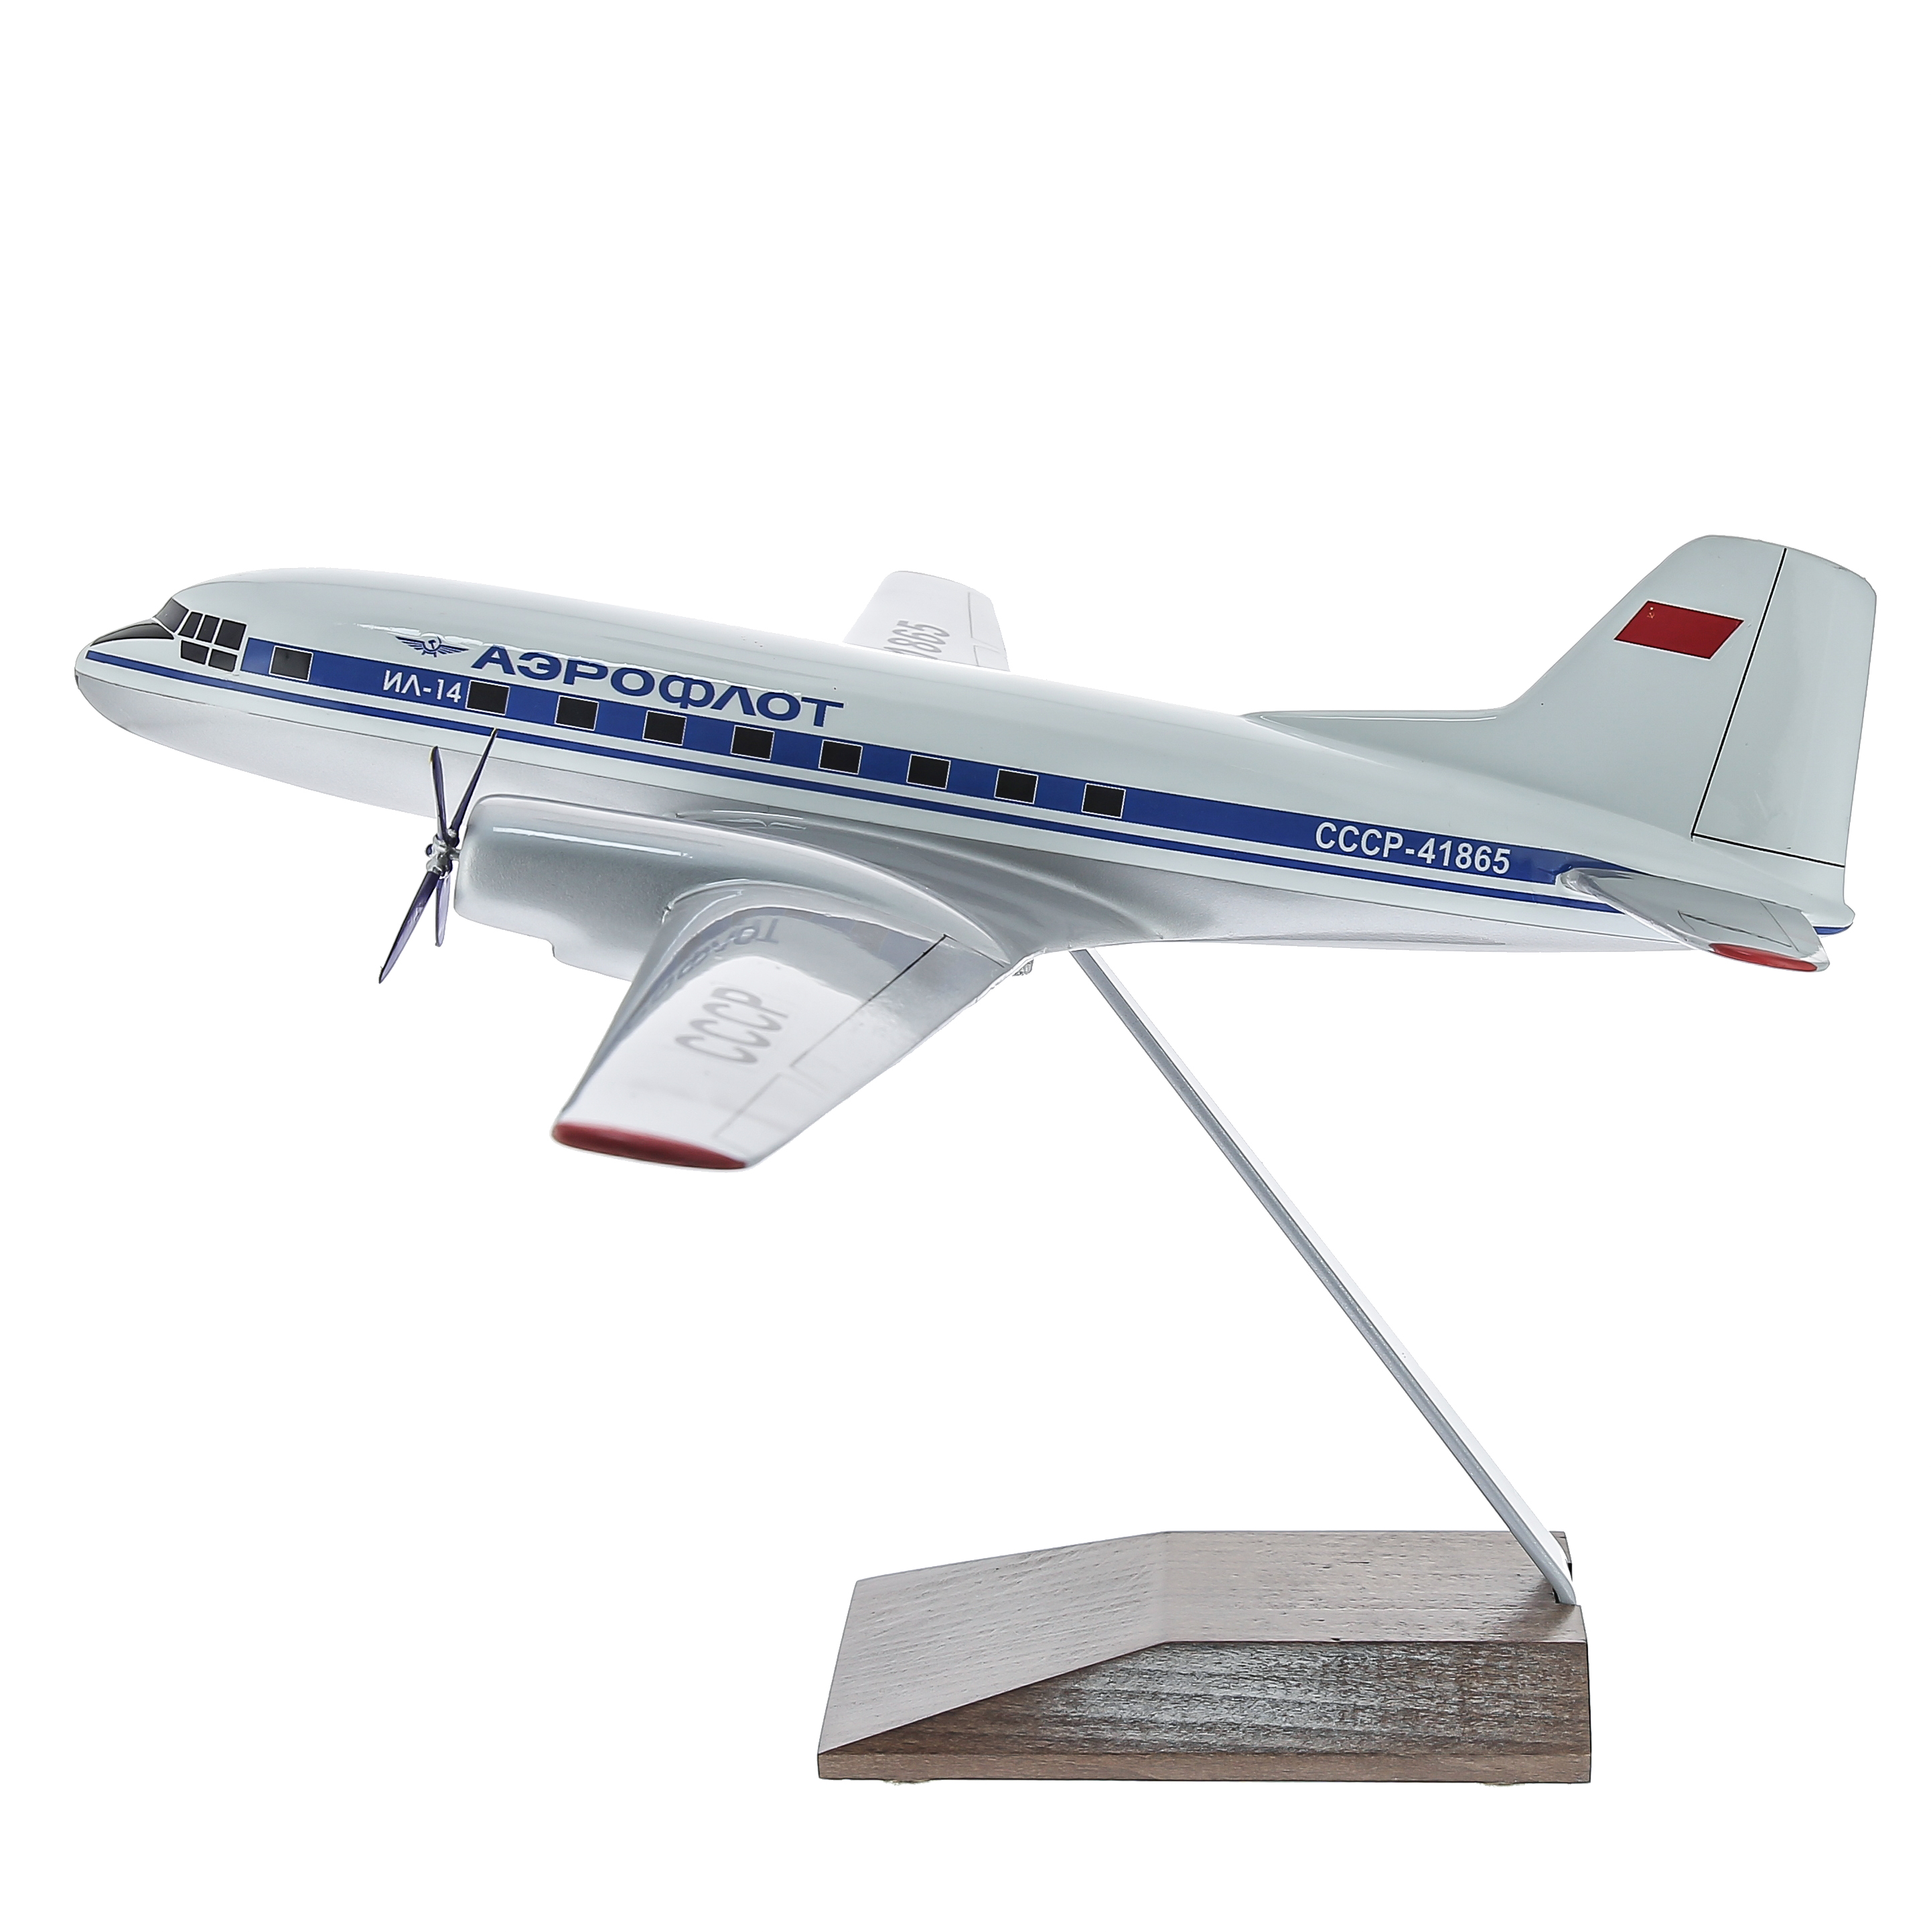 Сборные модели гражданской авиации | Купить, интернет-магазин